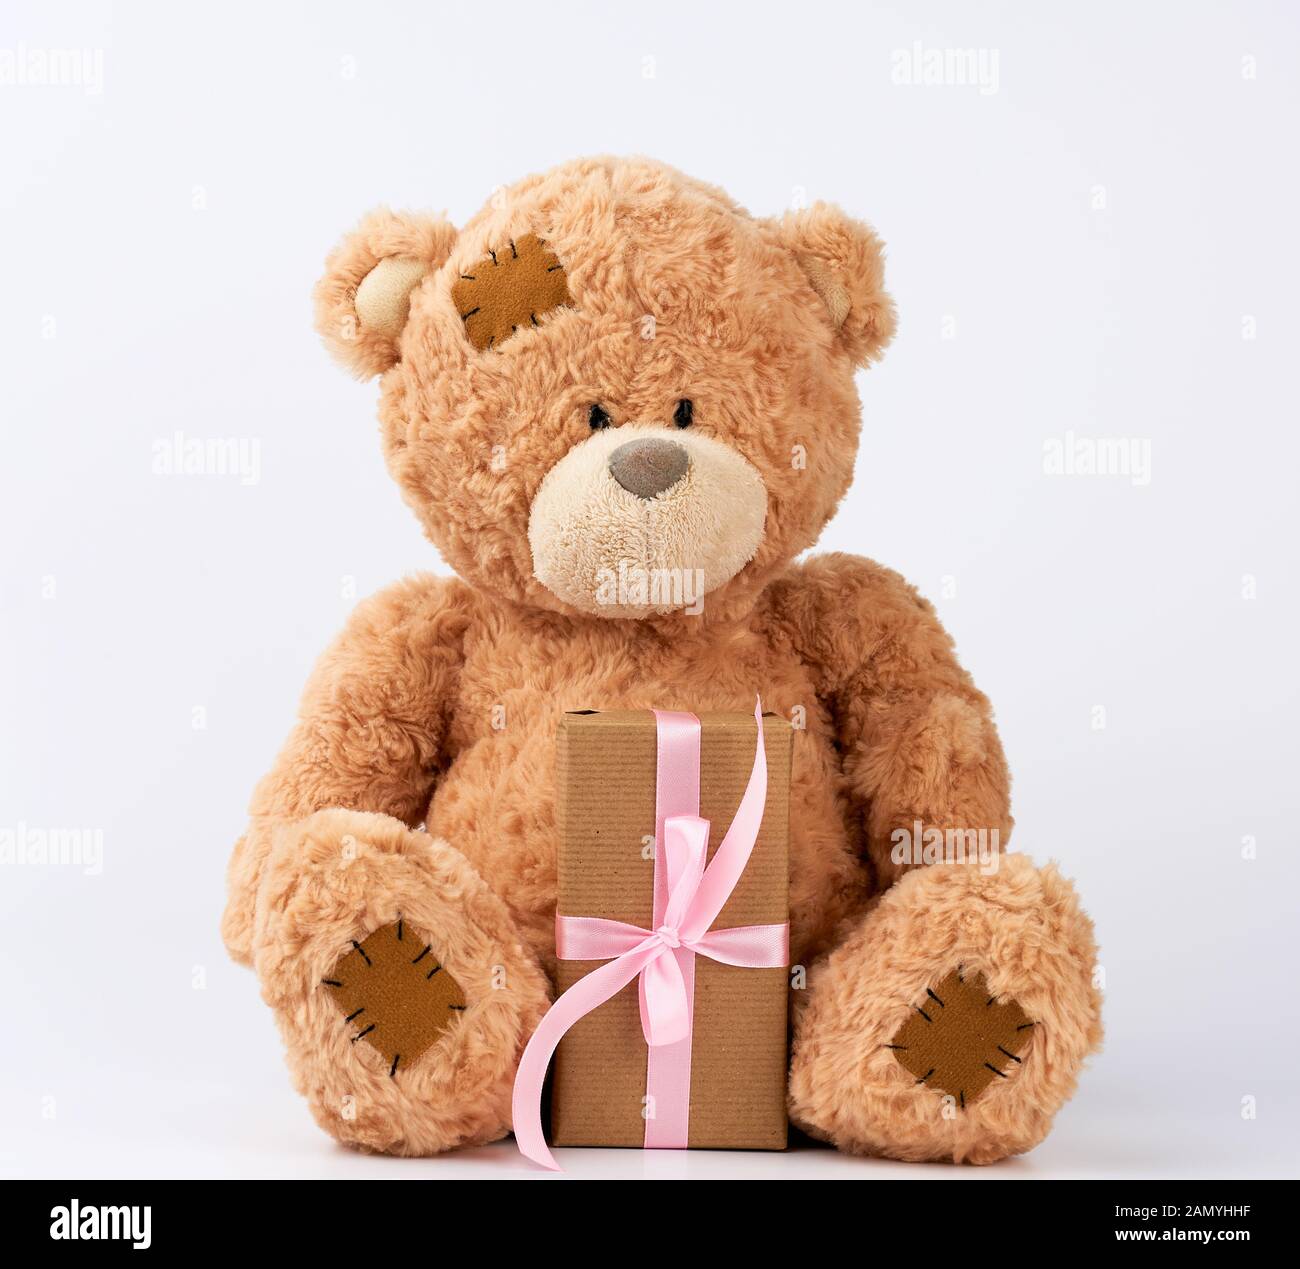 Grand ours en peluche beige avec des taches organiser cadeau en carton enveloppé dans du papier brun, attaché avec du ruban de soie rose sur fond blanc, joyeux anniversaire et valen Banque D'Images